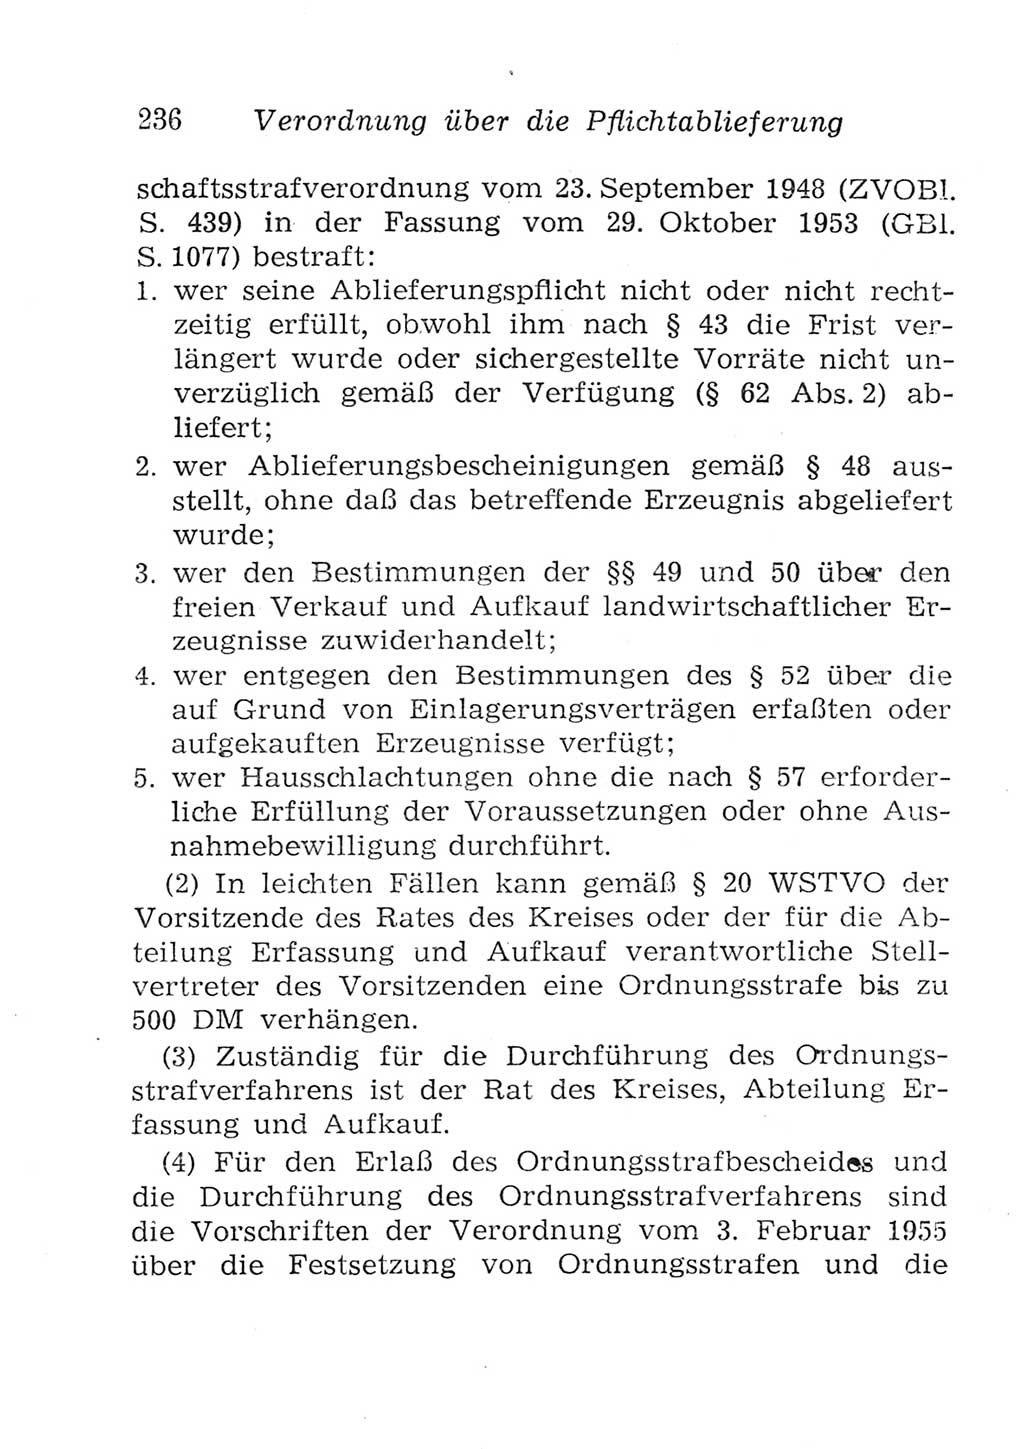 Strafgesetzbuch (StGB) und andere Strafgesetze [Deutsche Demokratische Republik (DDR)] 1957, Seite 236 (StGB Strafges. DDR 1957, S. 236)